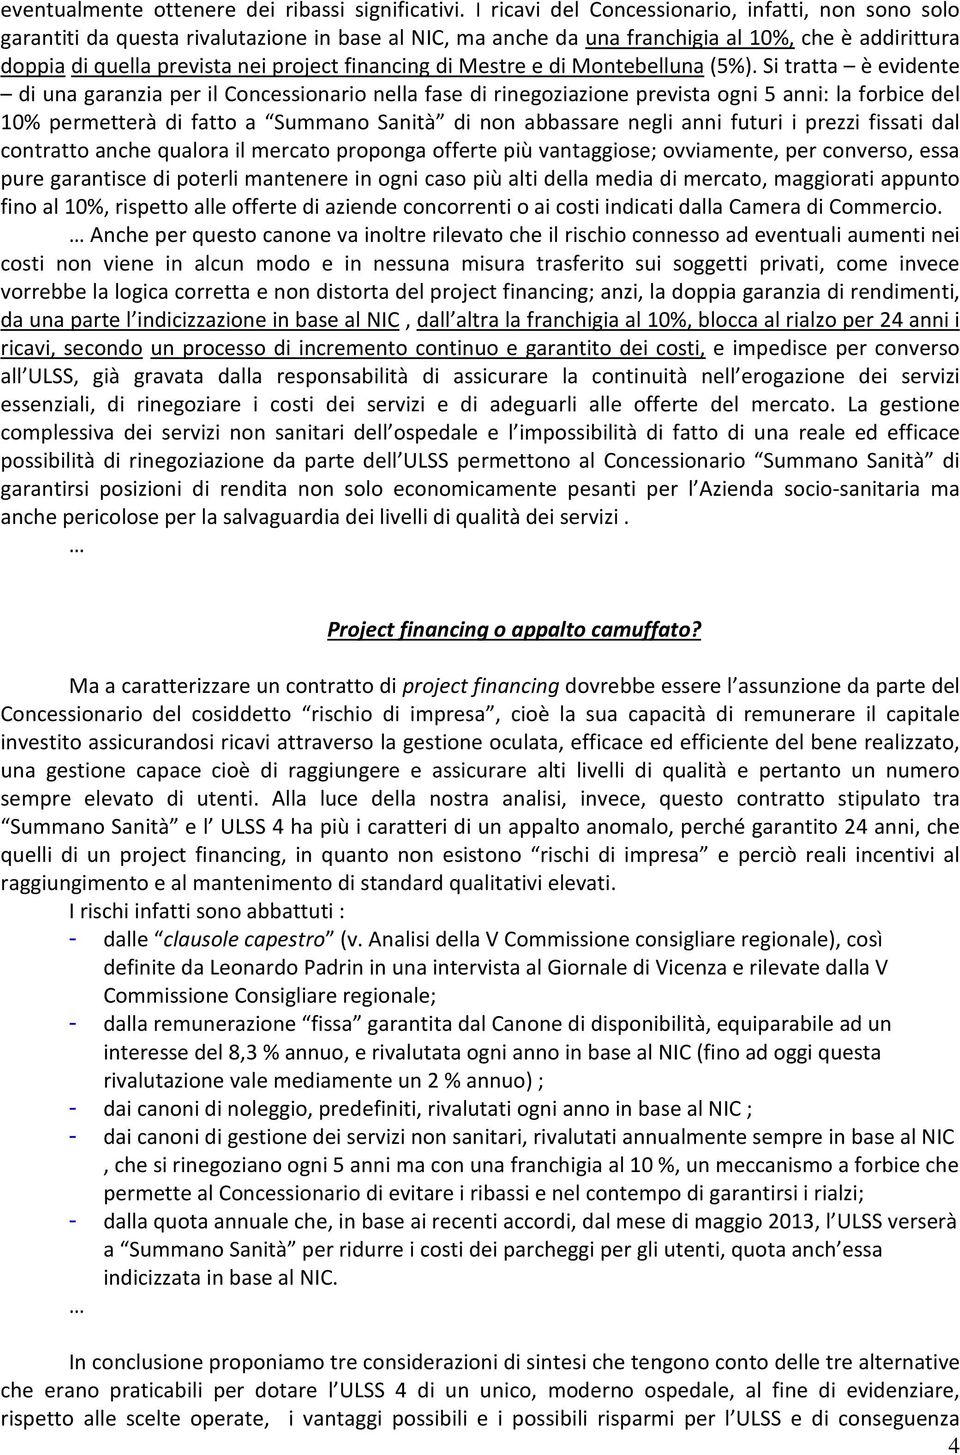 financing di Mestre e di Montebelluna (5%).